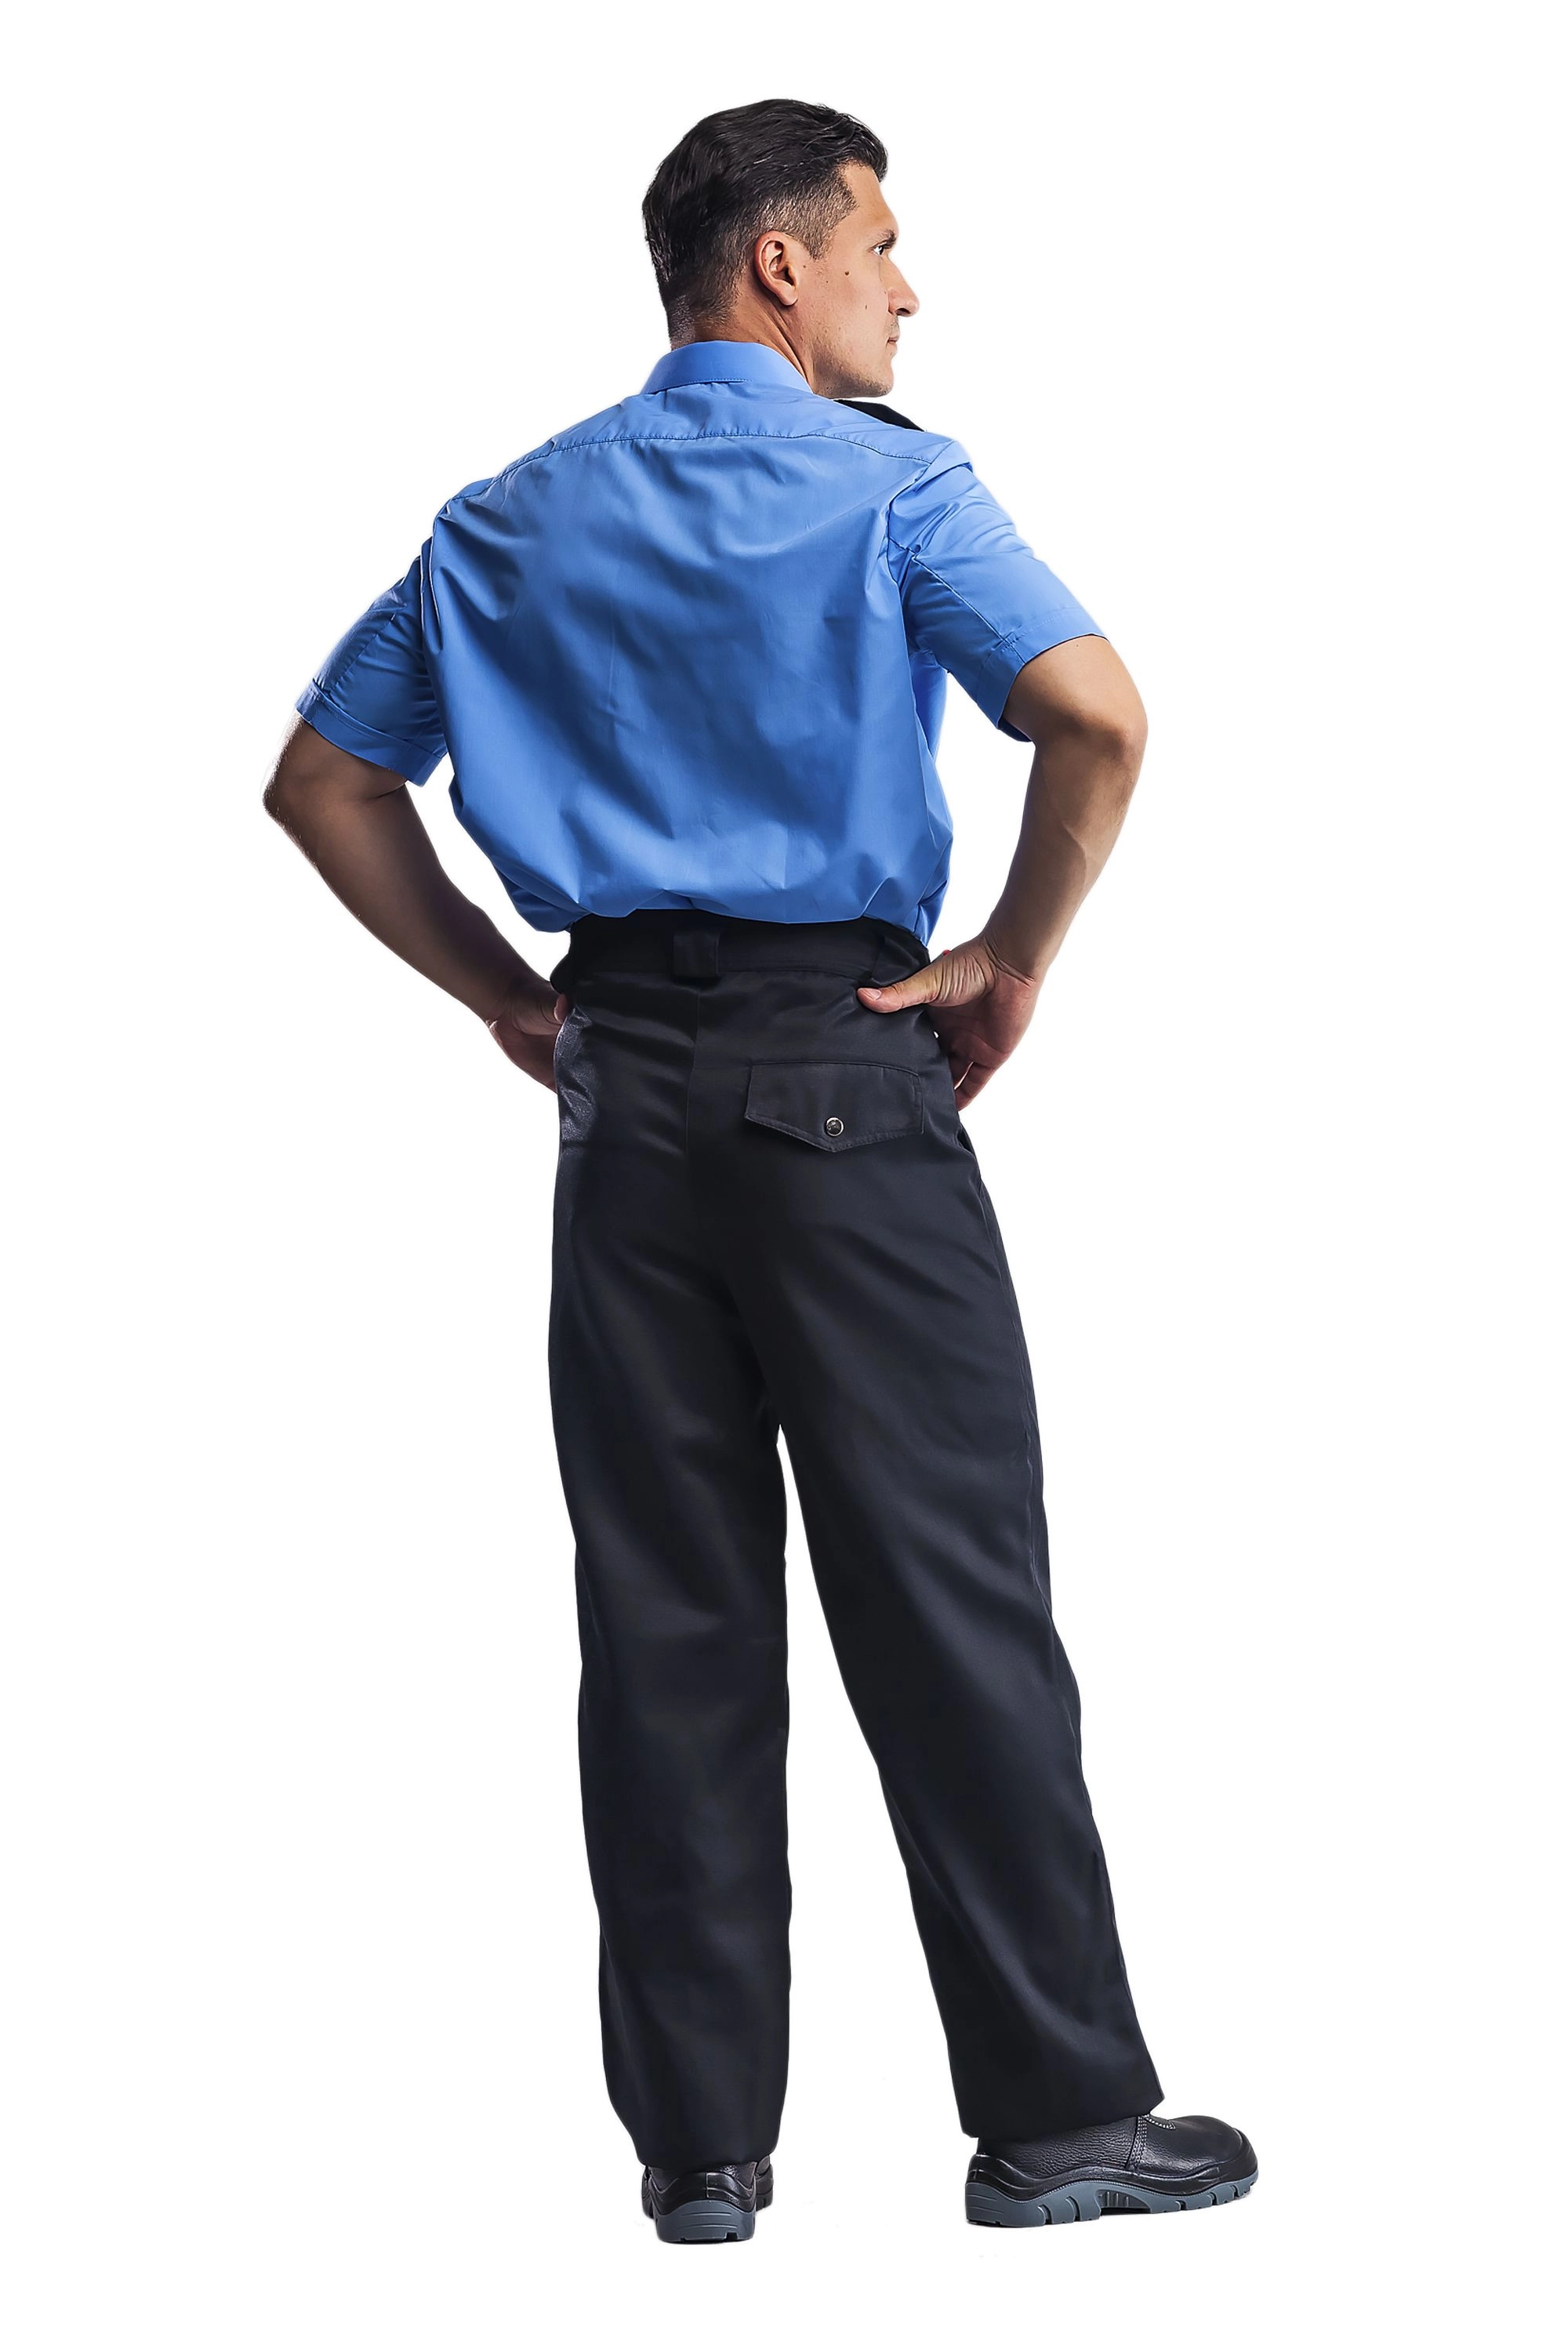 Рубашка для охранника голубой/черный (короткий рукав)